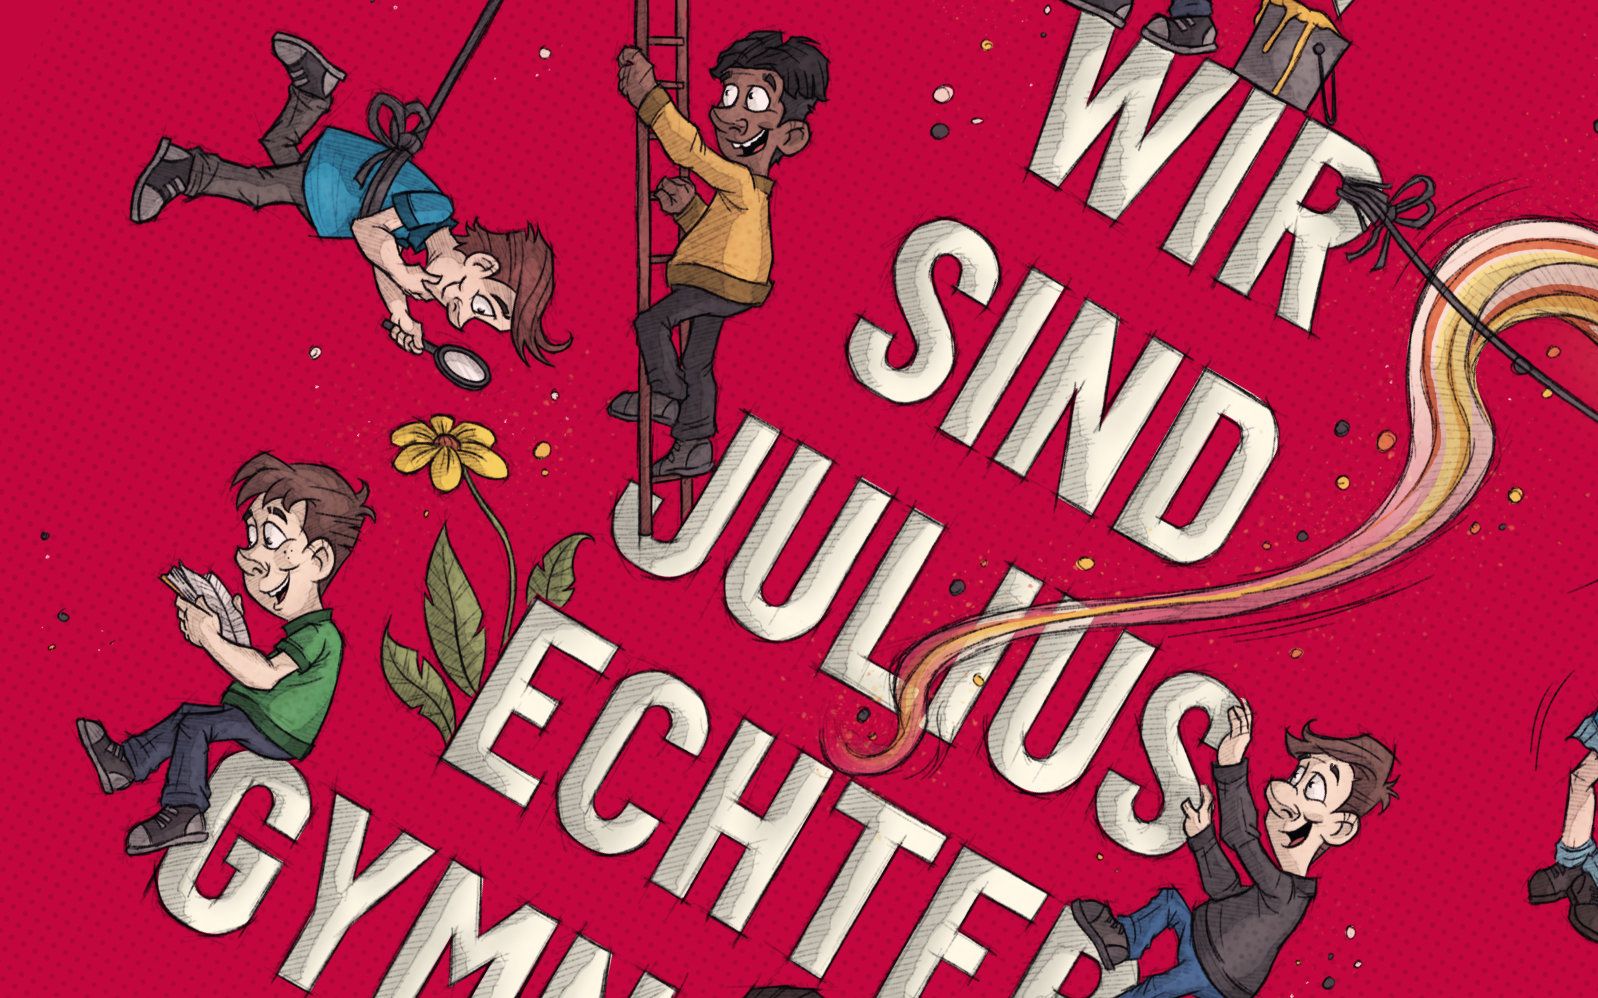 Ein Ausschnitt einer großformatigen Illustration für JEG Julius Echter Gymnasium, das viele Schüler im Cartoon Style zeigt, die auf den Buchstaben der Worte "Wir Sind Julius Echter Gymnasium" herumturnen.